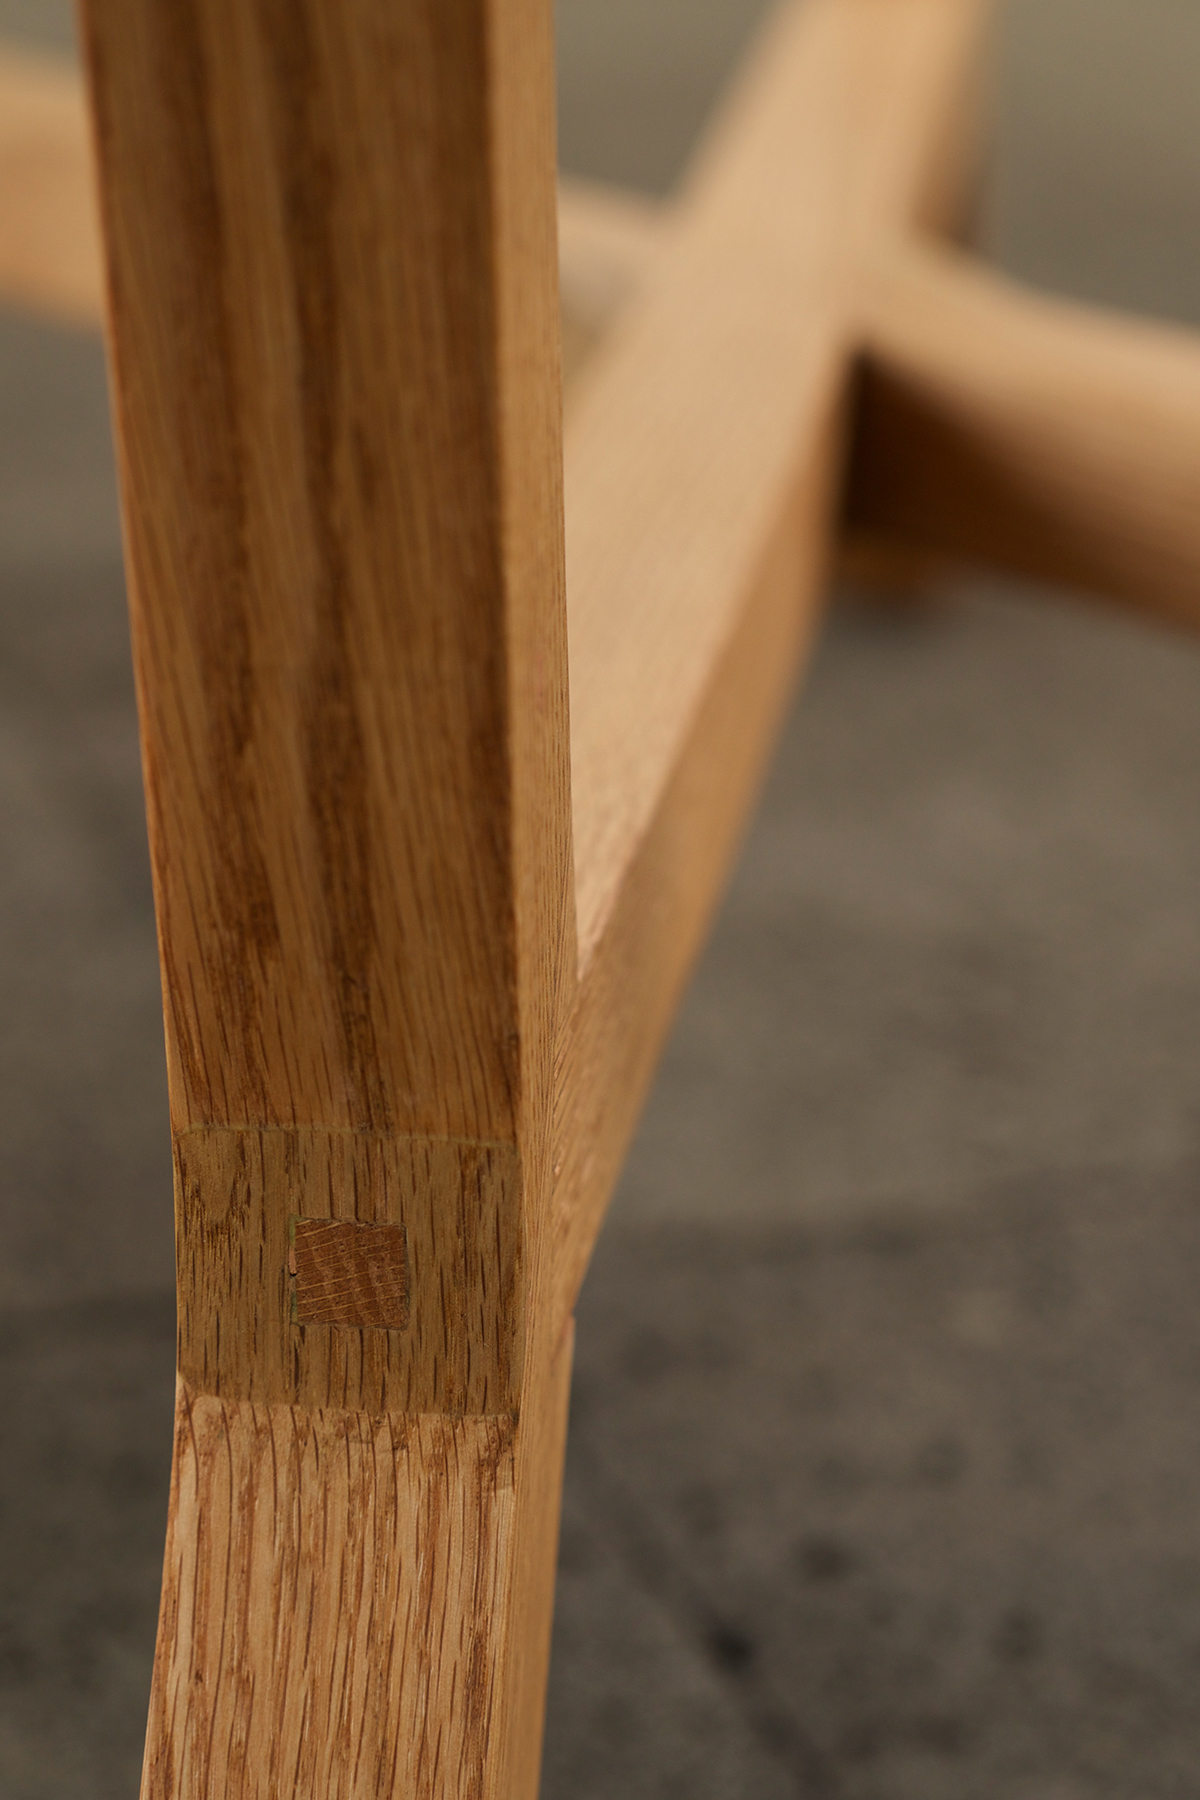 table ahec mesa hardwood madera dura mexico Mexican Design diseño mexicano encino roble Nogal oak walnut dozal